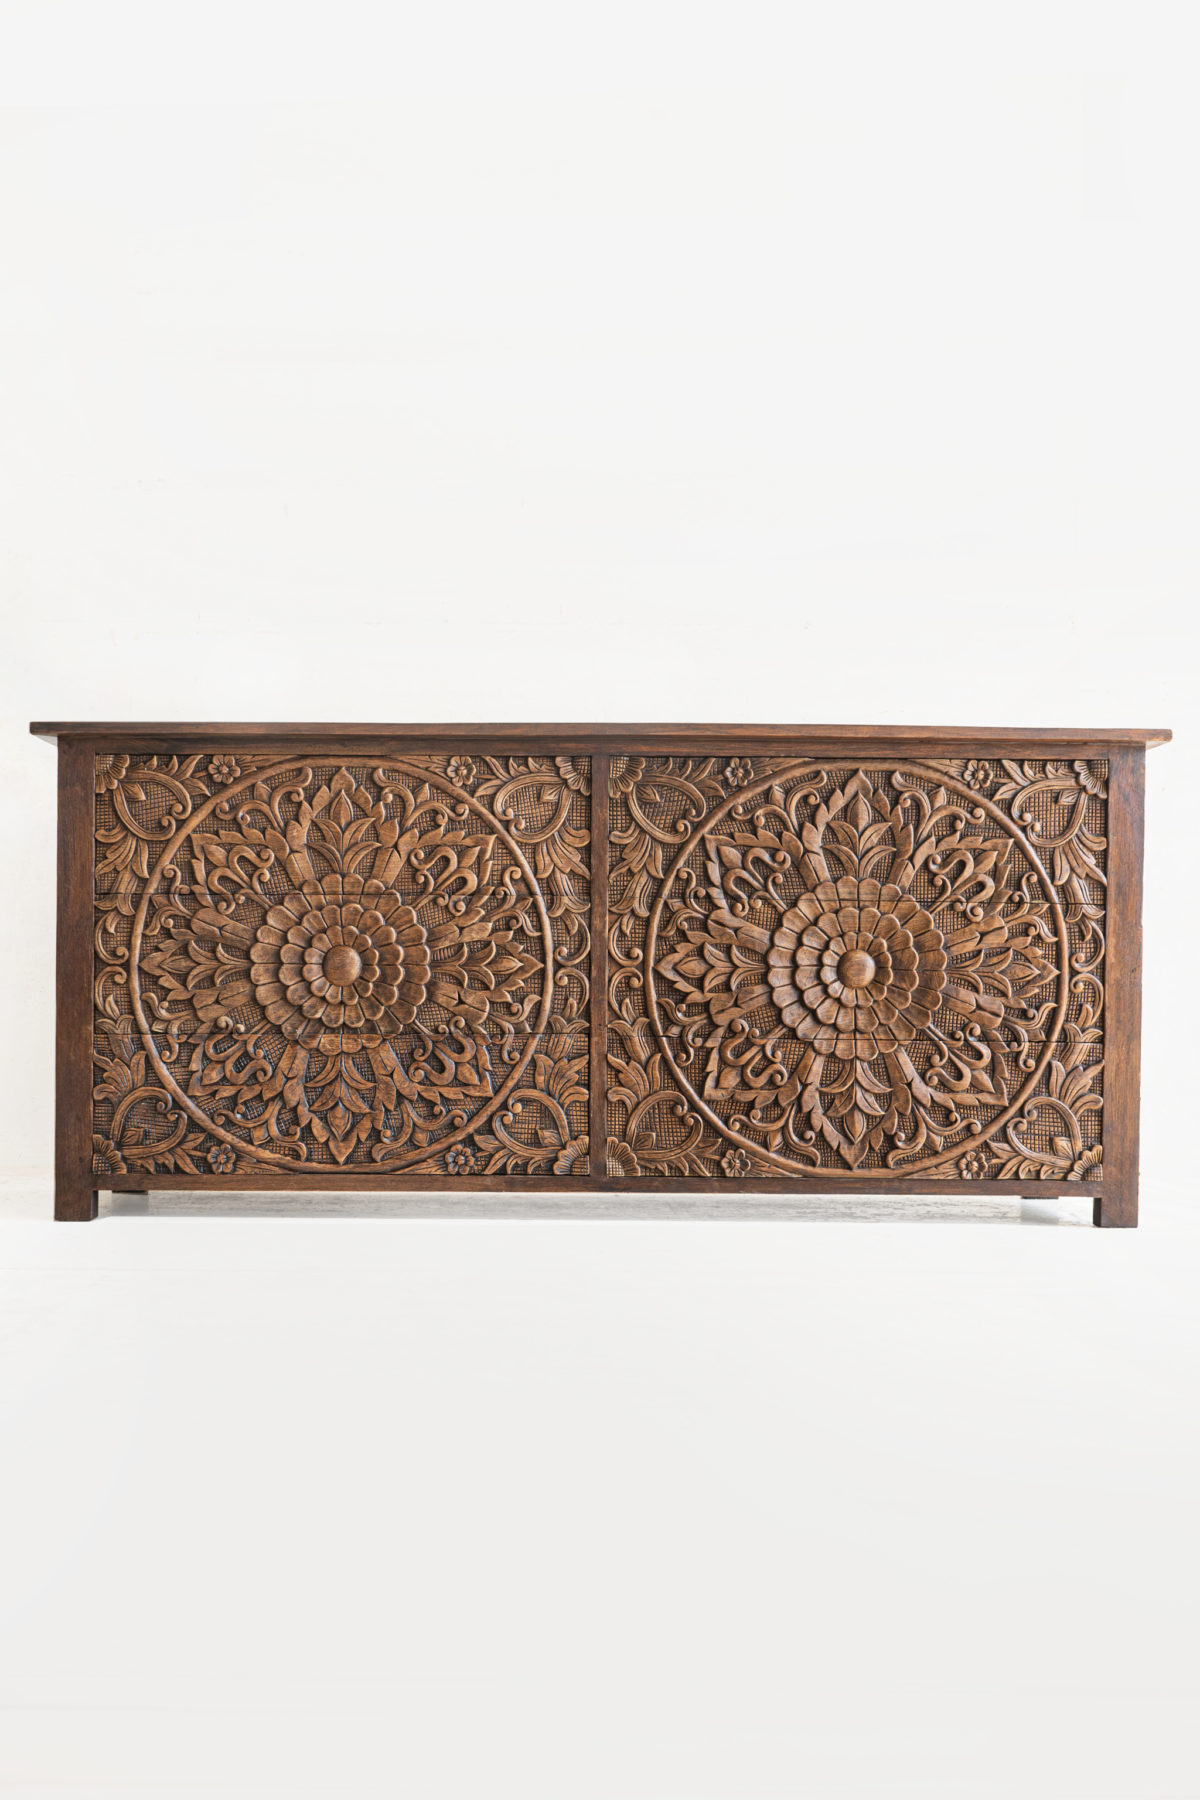 Cabinet carve wood furniture